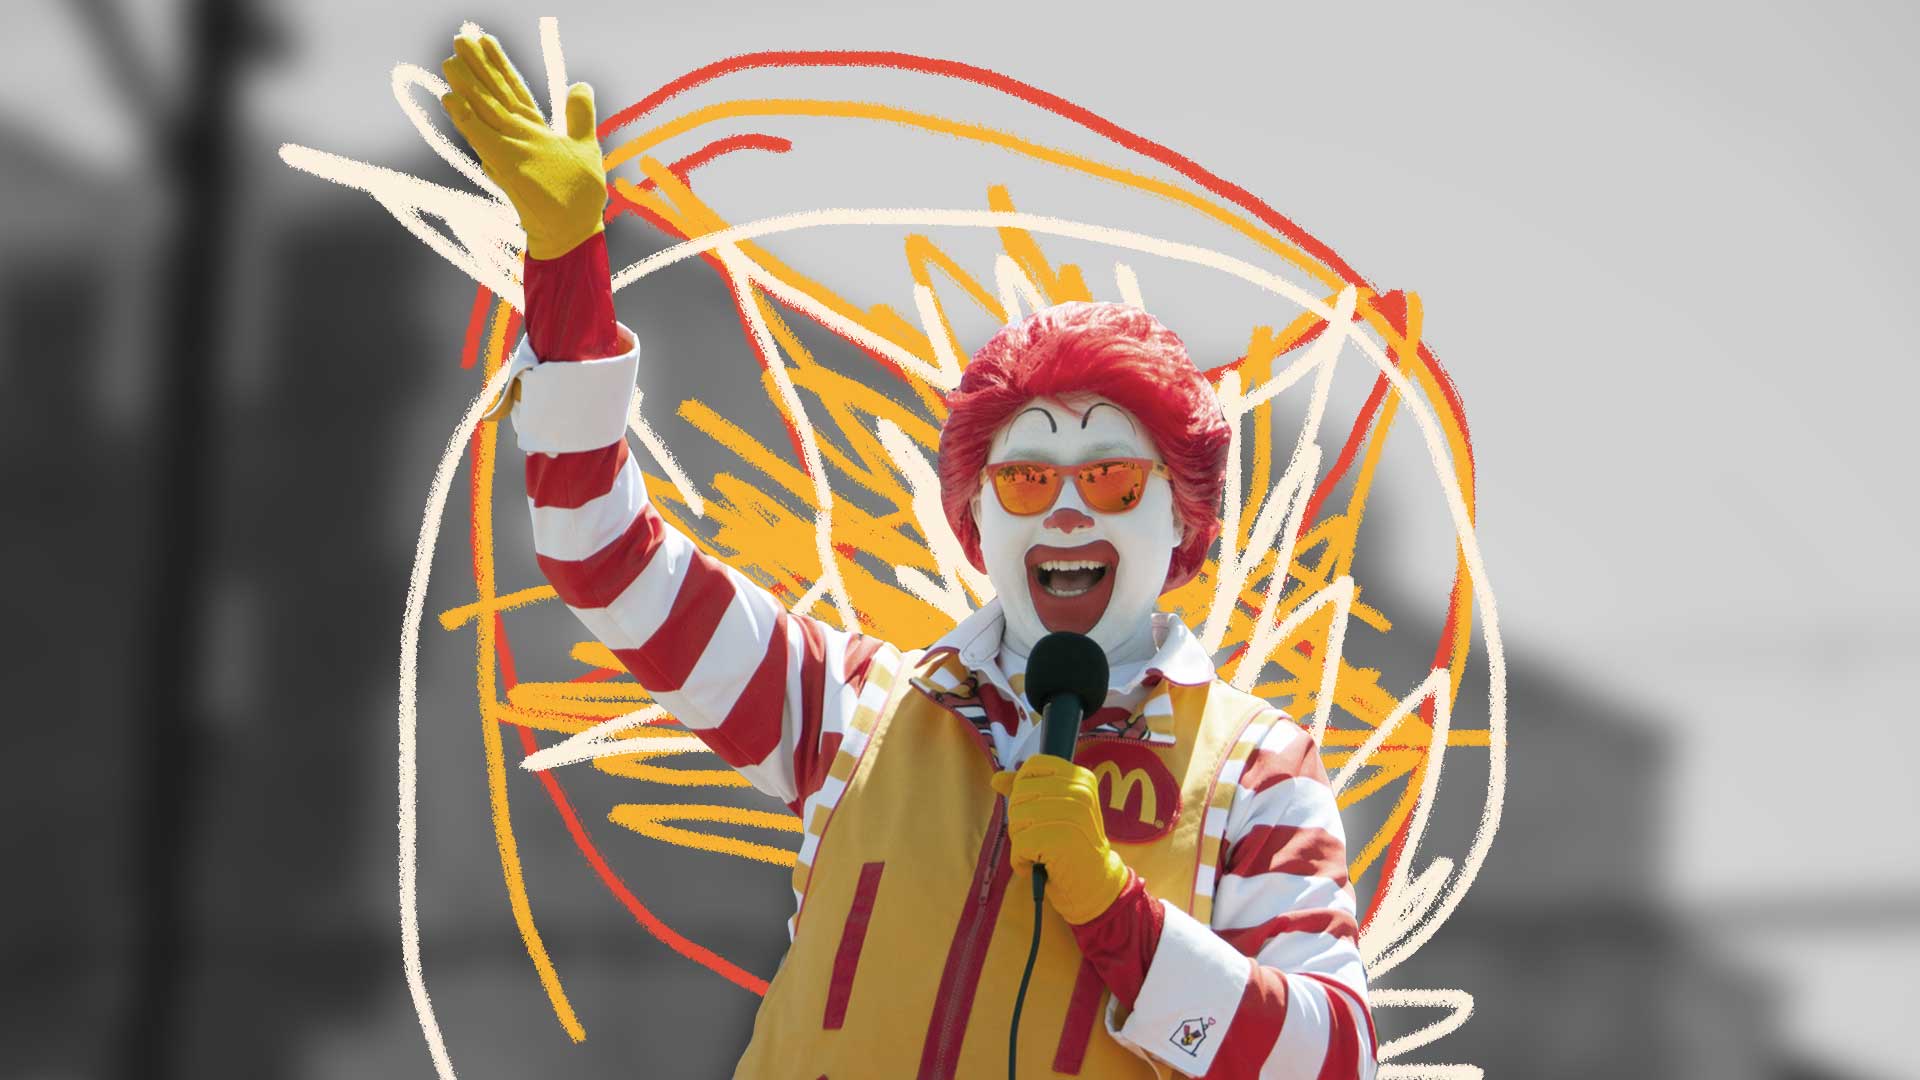 Fundo em preto e branco, no centro da foto vemos o palhaço Ronald McDonald, cercado por intervenções de giz em vermelho e amarelo.